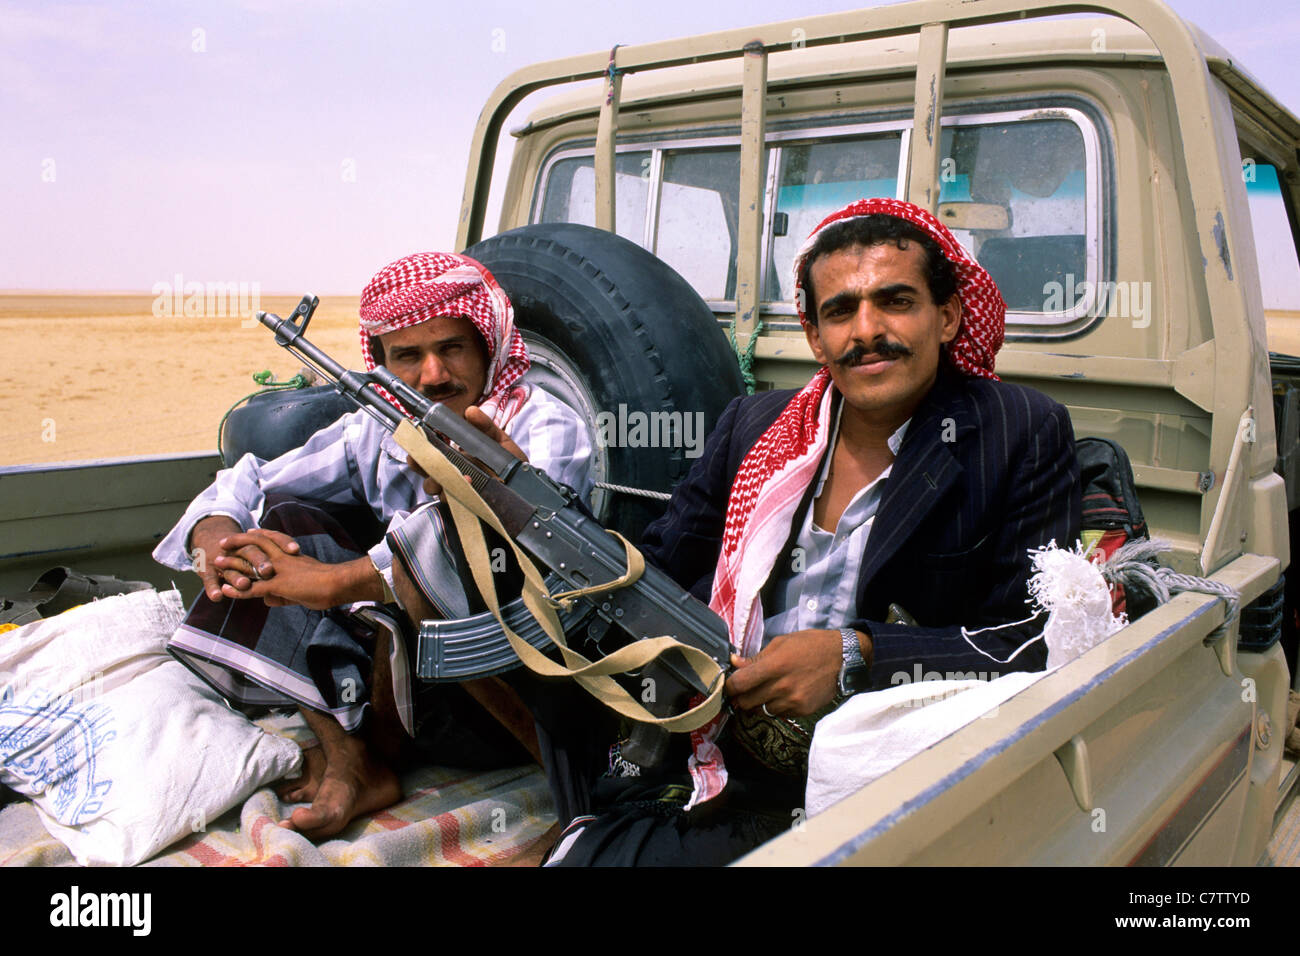 Yemen, Sayun, bedouins in Hadramaut desert Stock Photo